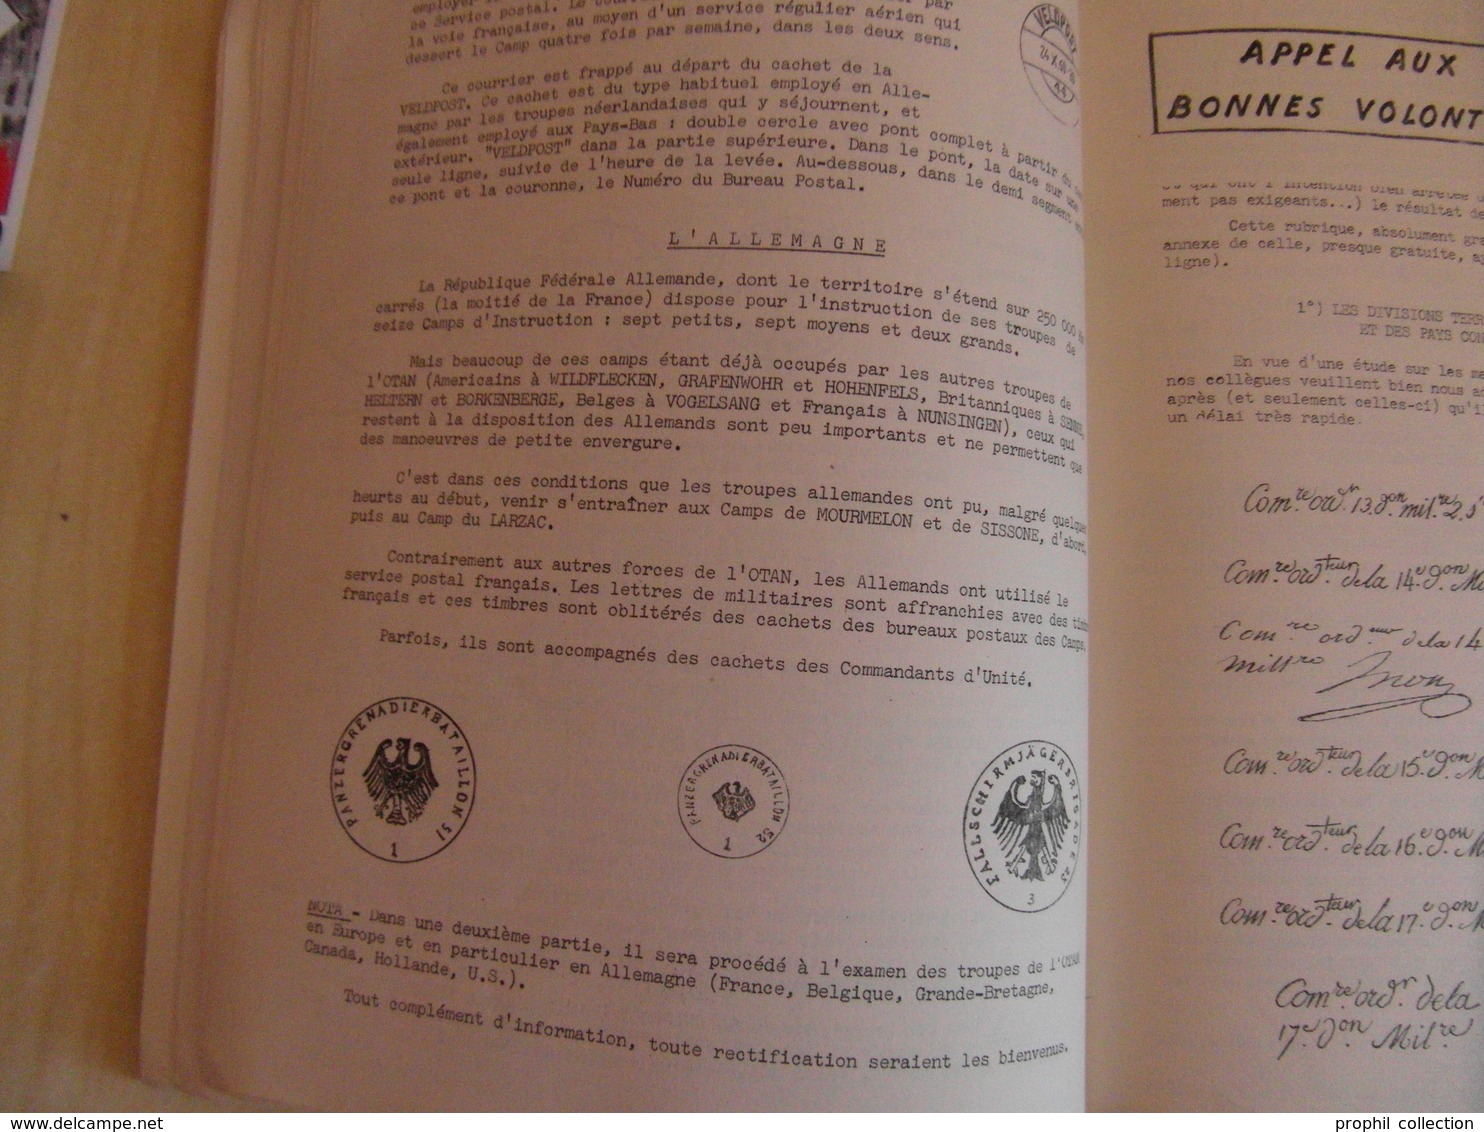 LES FEUILLES MARCOPHILES N° 167 (DECEMBRE 1965 / 120 PAGES / PLUSIEURS PHOTOS) - BULLETIN DE L'UNION MARCOPHILE